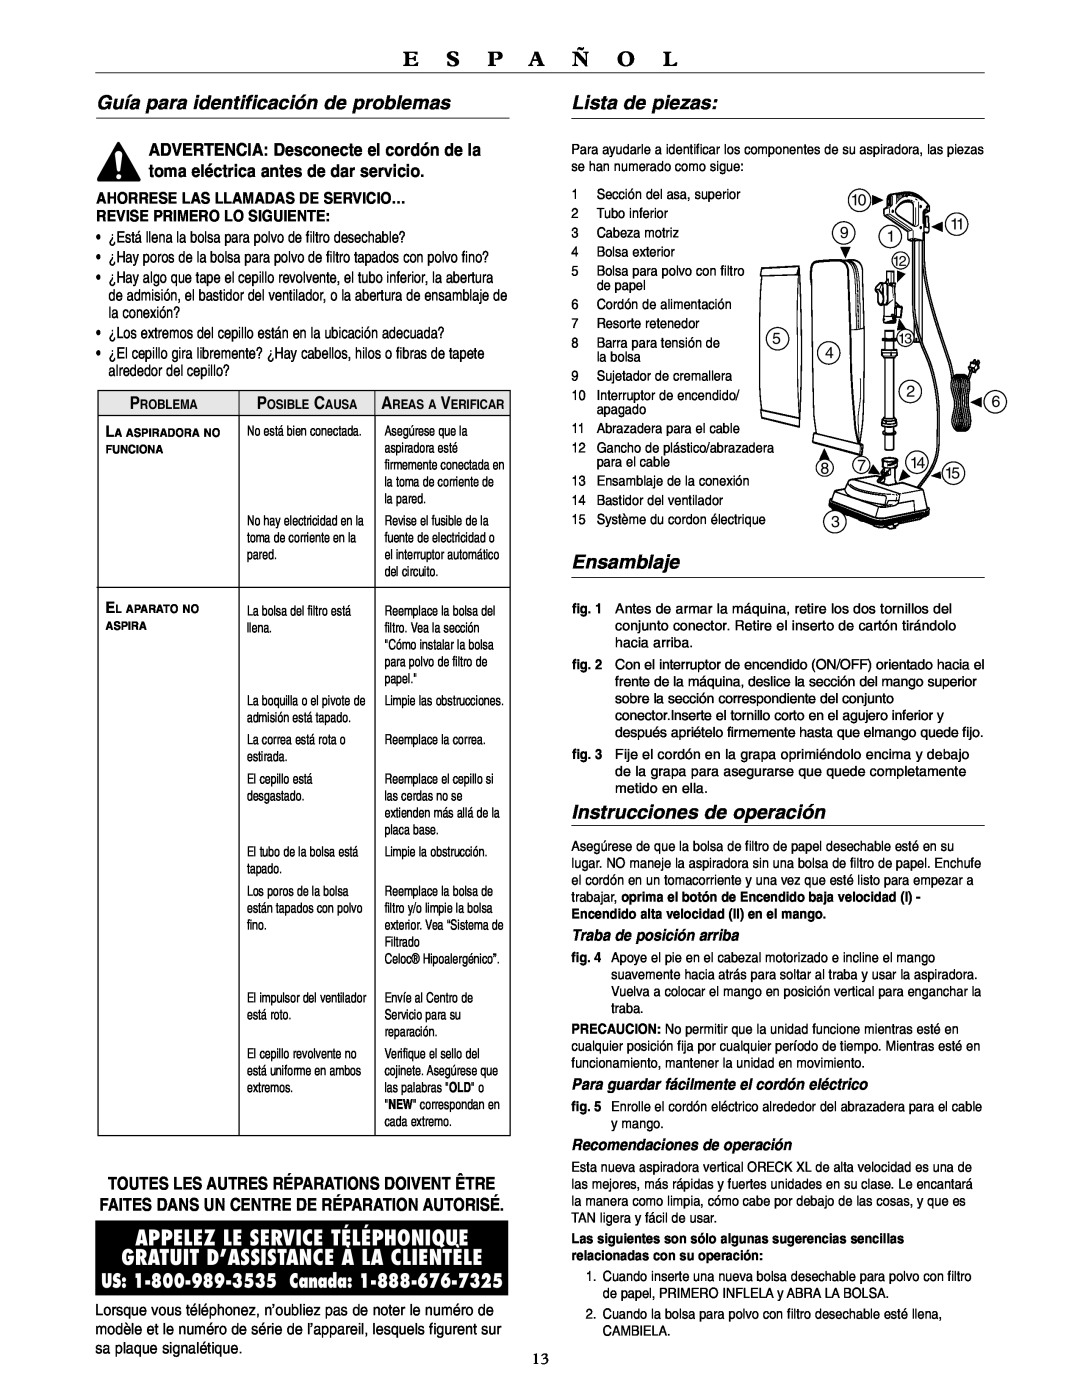 Oreck U4080H2 warranty Guía para identificación de problemas, Lista de piezas, Ensamblaje, Instrucciones de operación 